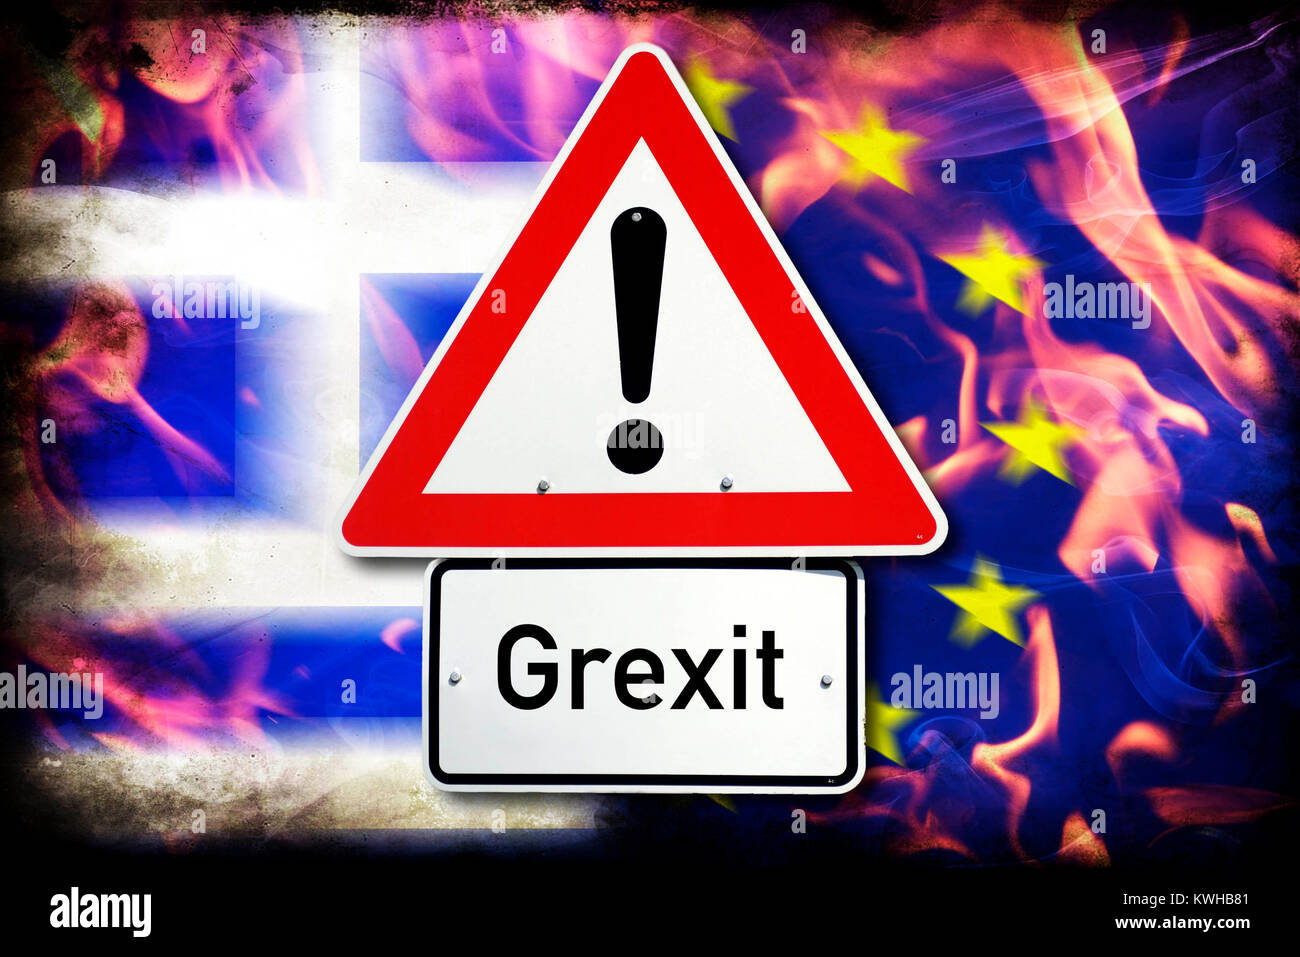 Greece and EU flag in flames and danger sign, symbolic photo Grexit, Griechenland- und EU-Fahne in Flammen und Gefahrenschild, Symbolfoto Grexit Stock Photo